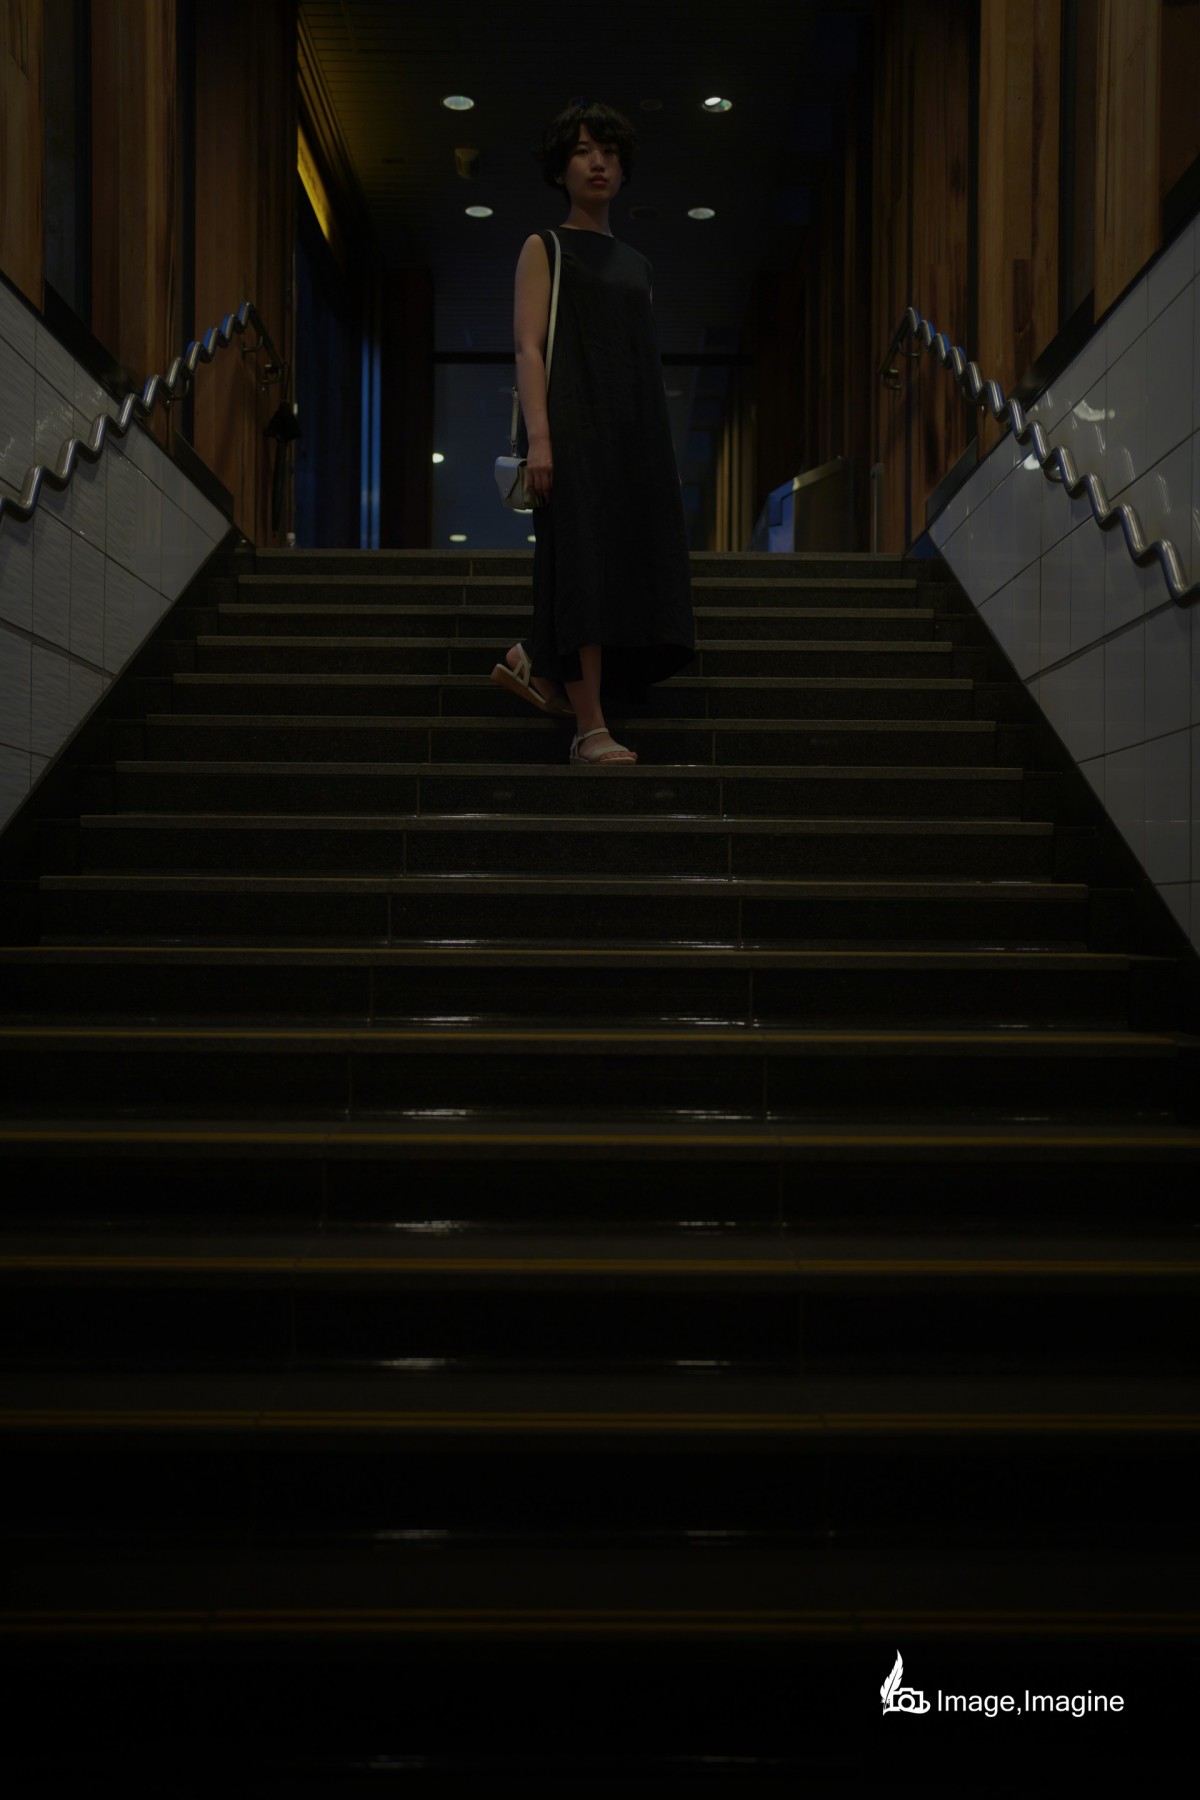 夜の街にて、地下へ続く階段で女性を撮影した写真。女性は全身黒いワンピースを着て、こちら見つめながら階段の中央で立っている。